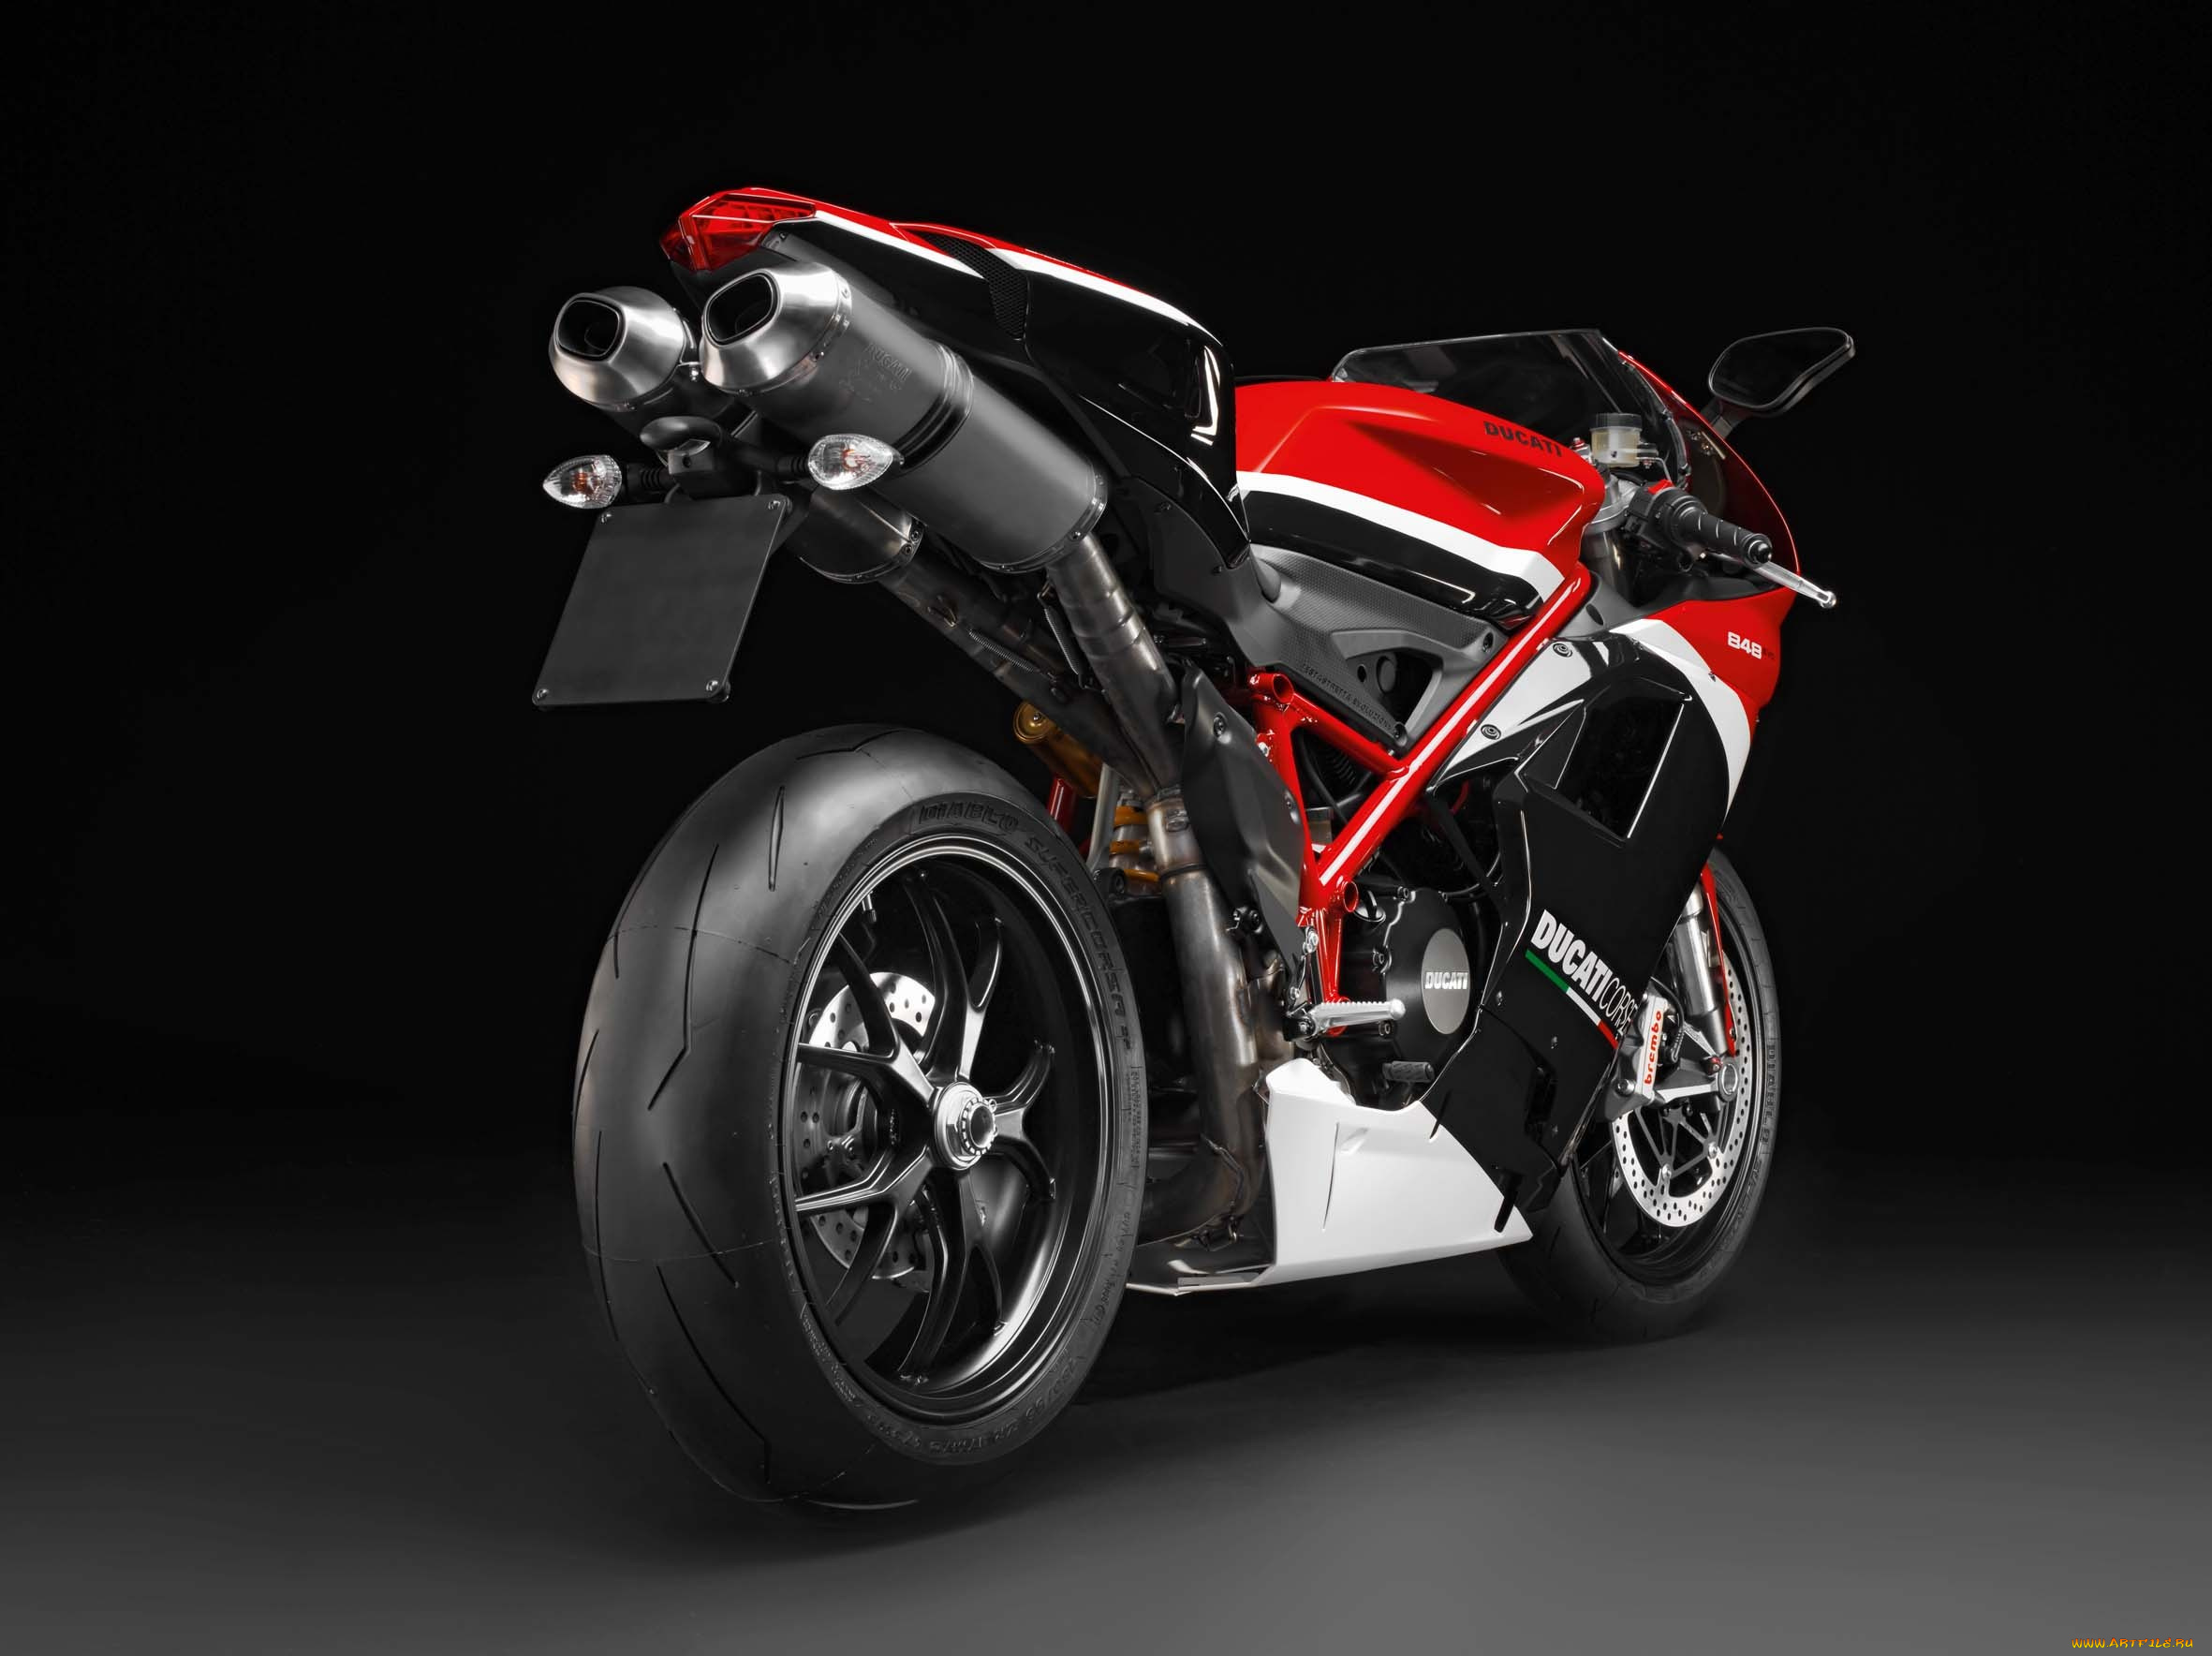 2012-ducati-superbike-848-evo-corse-special-edition, мотоциклы, ducati, corse